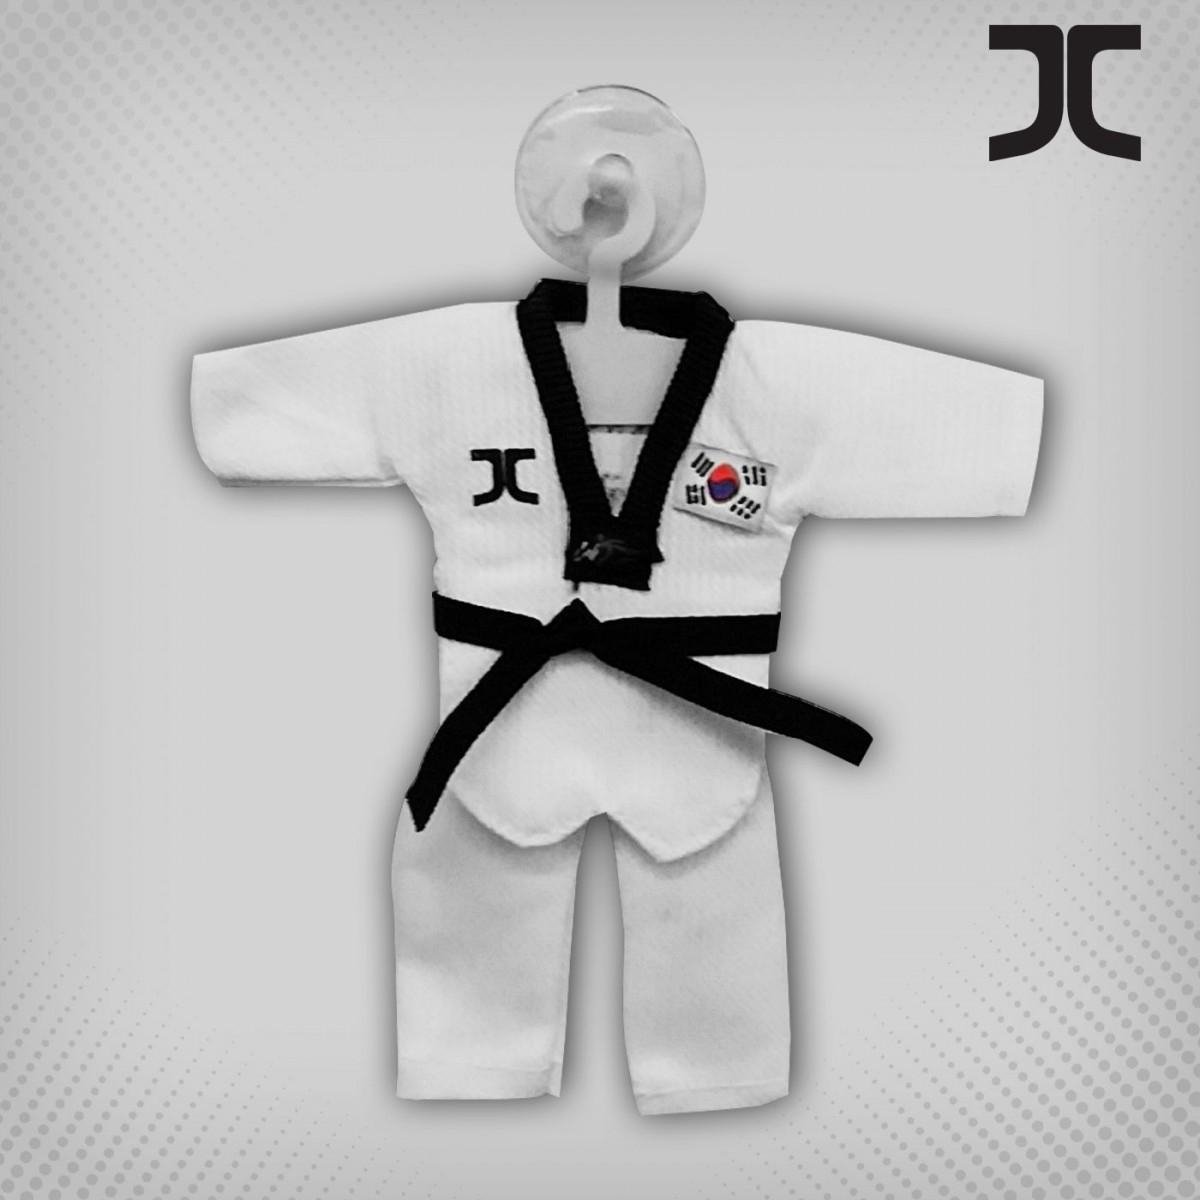 Kyorugi-Taekwondopak Dan Jcalicu Mini